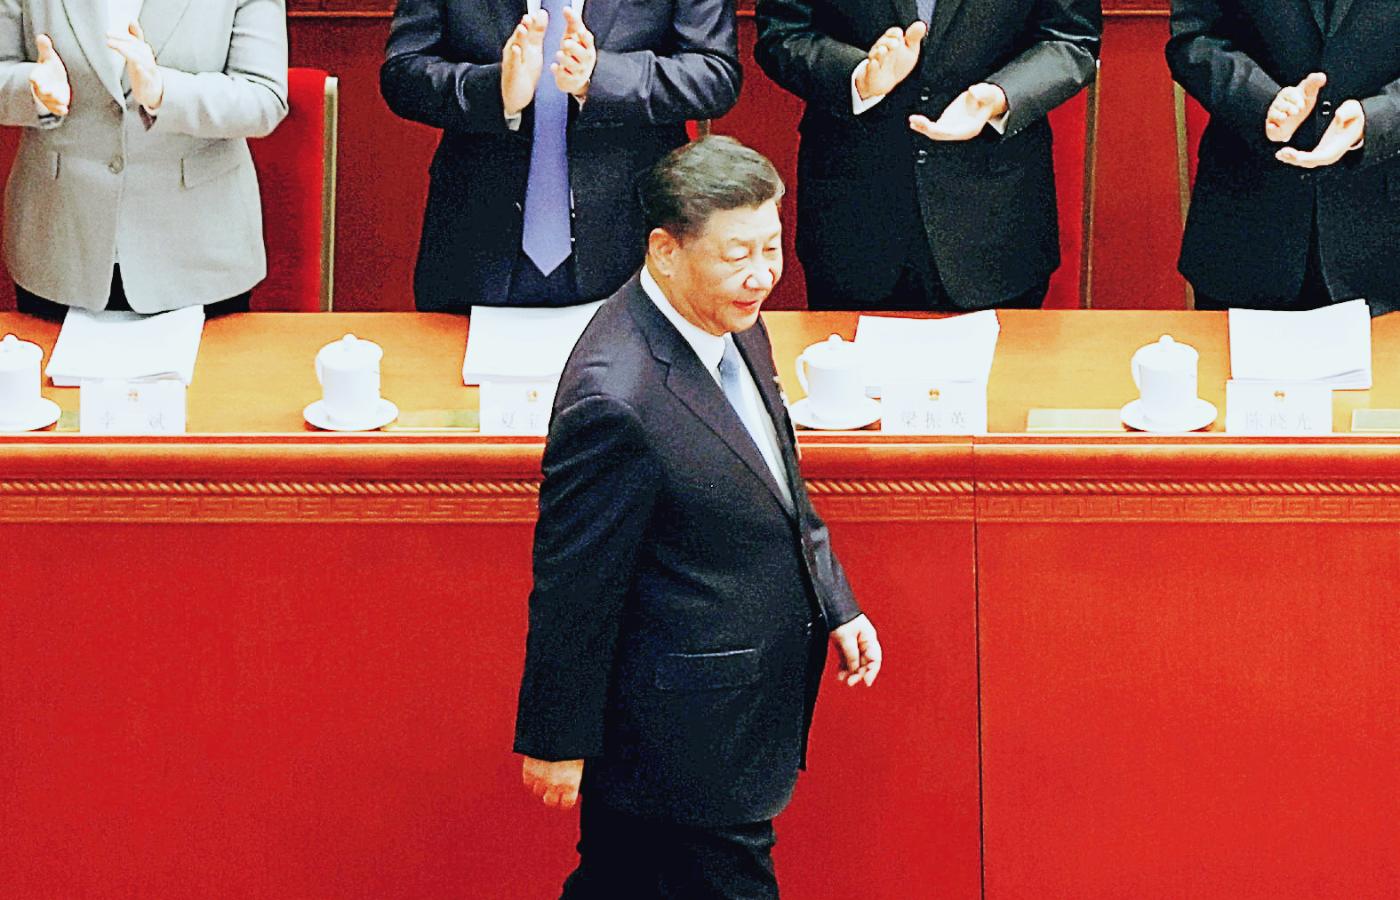 Na Chińczyków starają się naciskać Stany Zjednoczone, w piątek 17 marca w rozmowie telefonicznej z liderem ChRL Xi Jinpingiem będzie to zapewne robił prezydent Joe Biden.